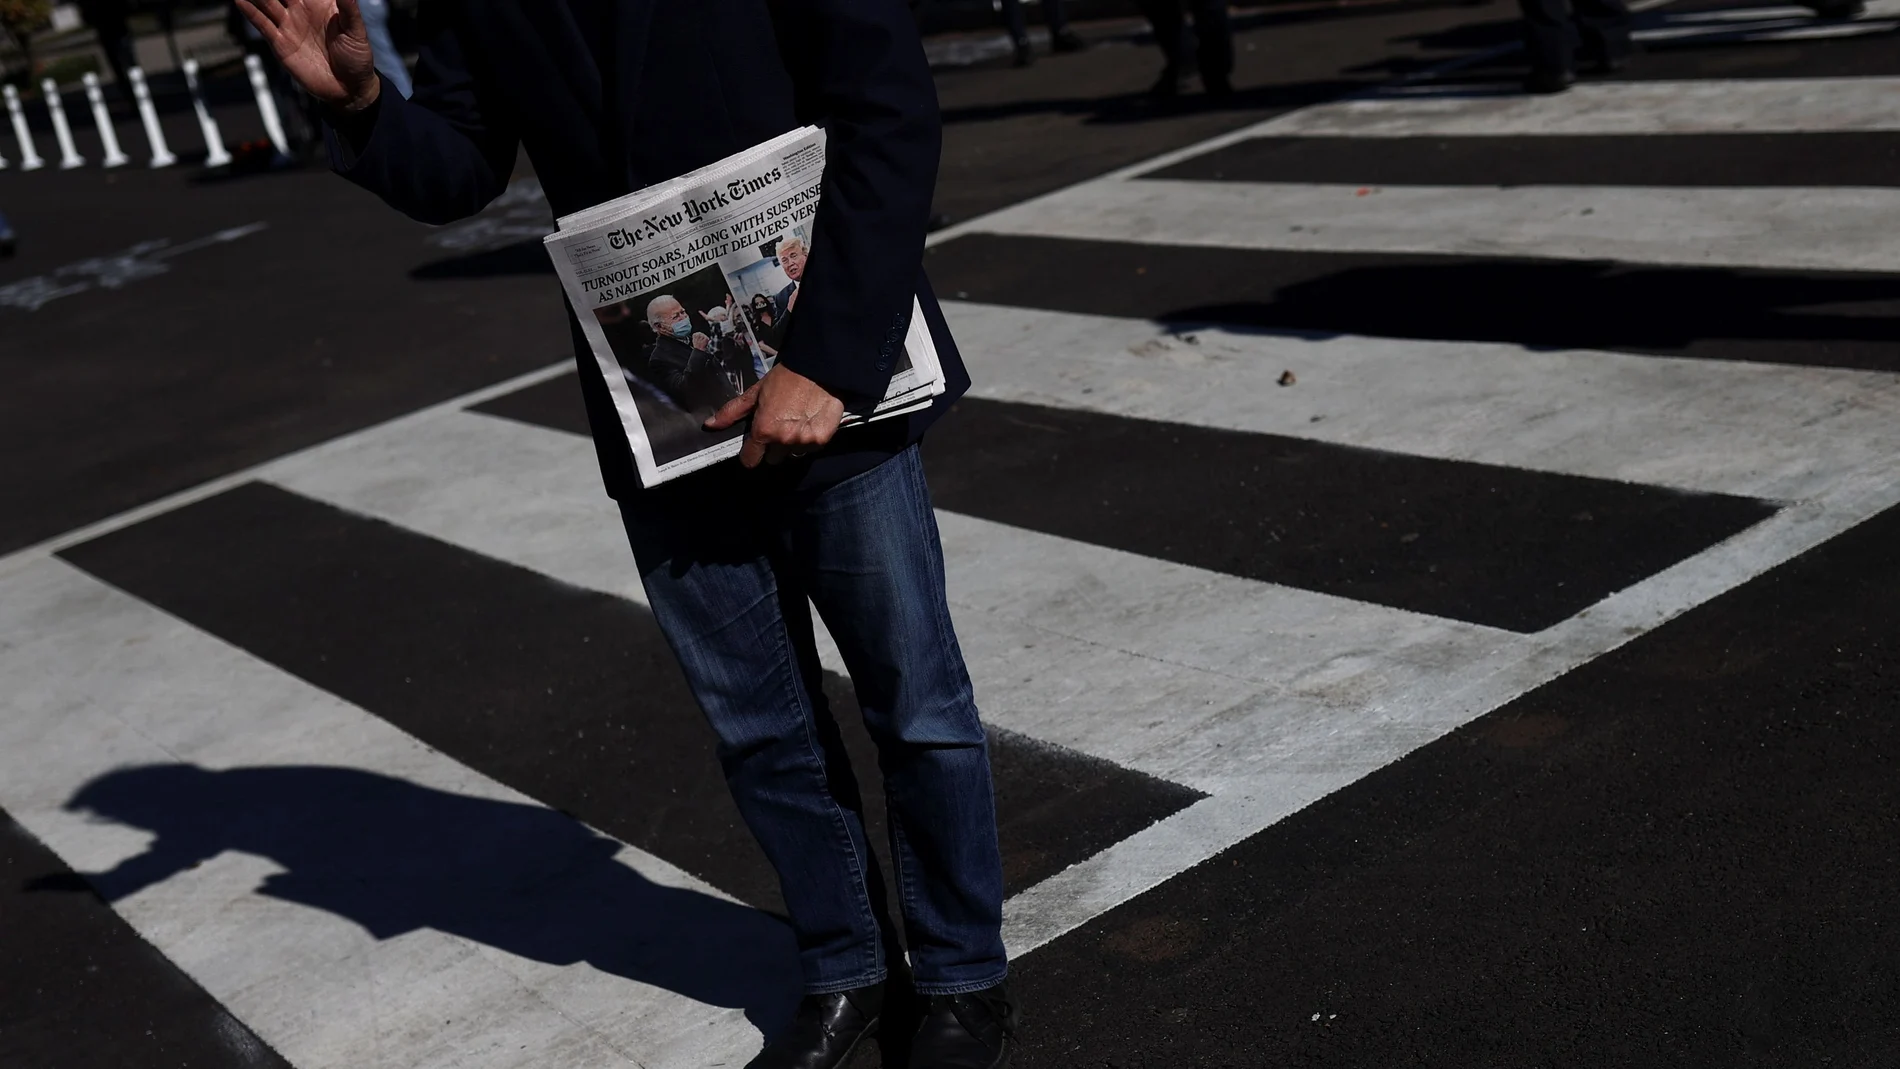 Un hombres suejta un ejemplar de New Yor Times en Washington.